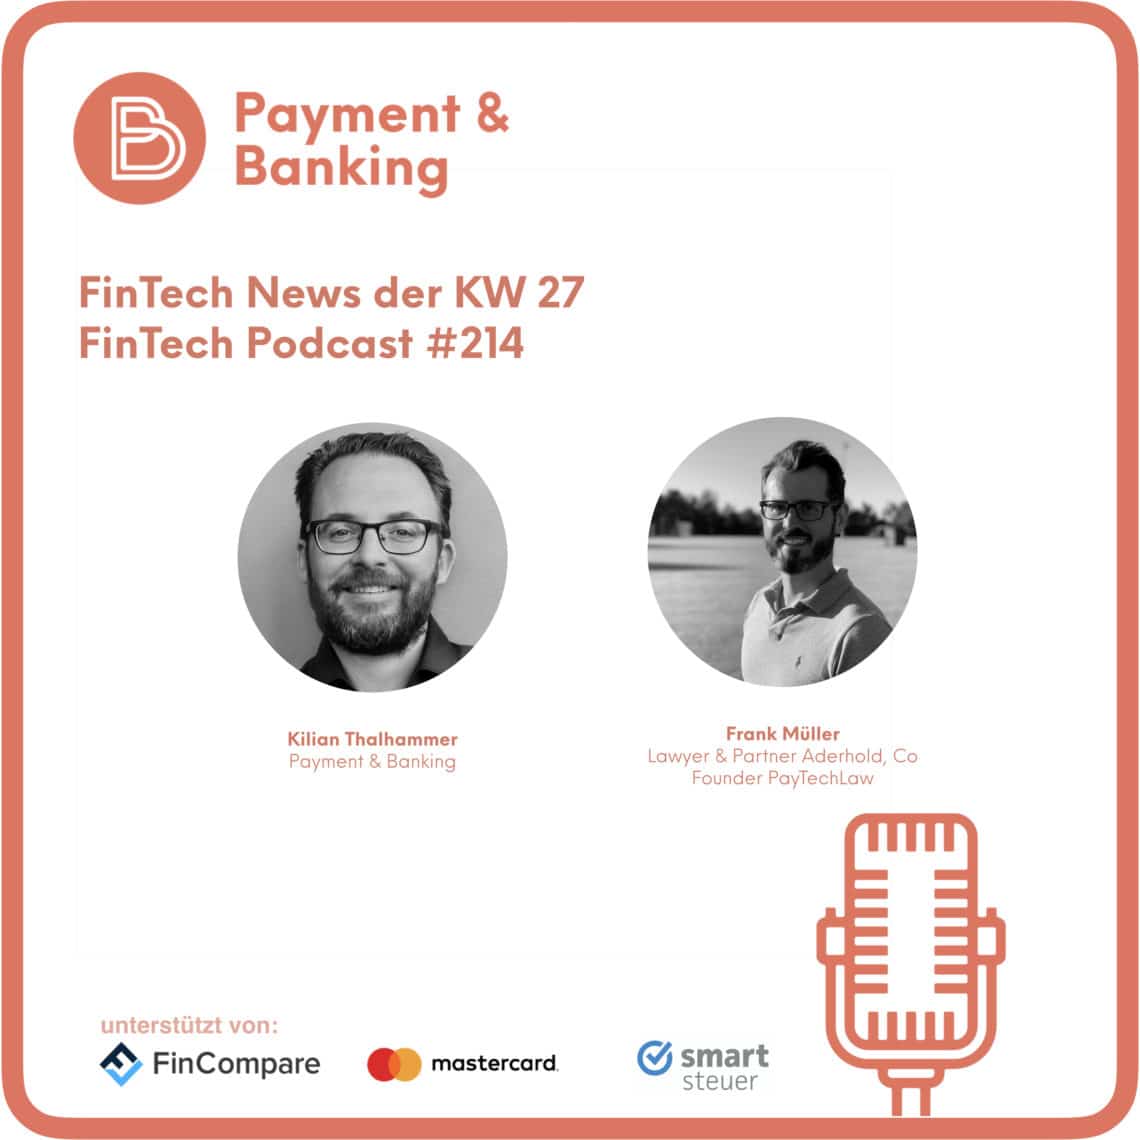 Die News der KW 27 - FinTech Podcast #214